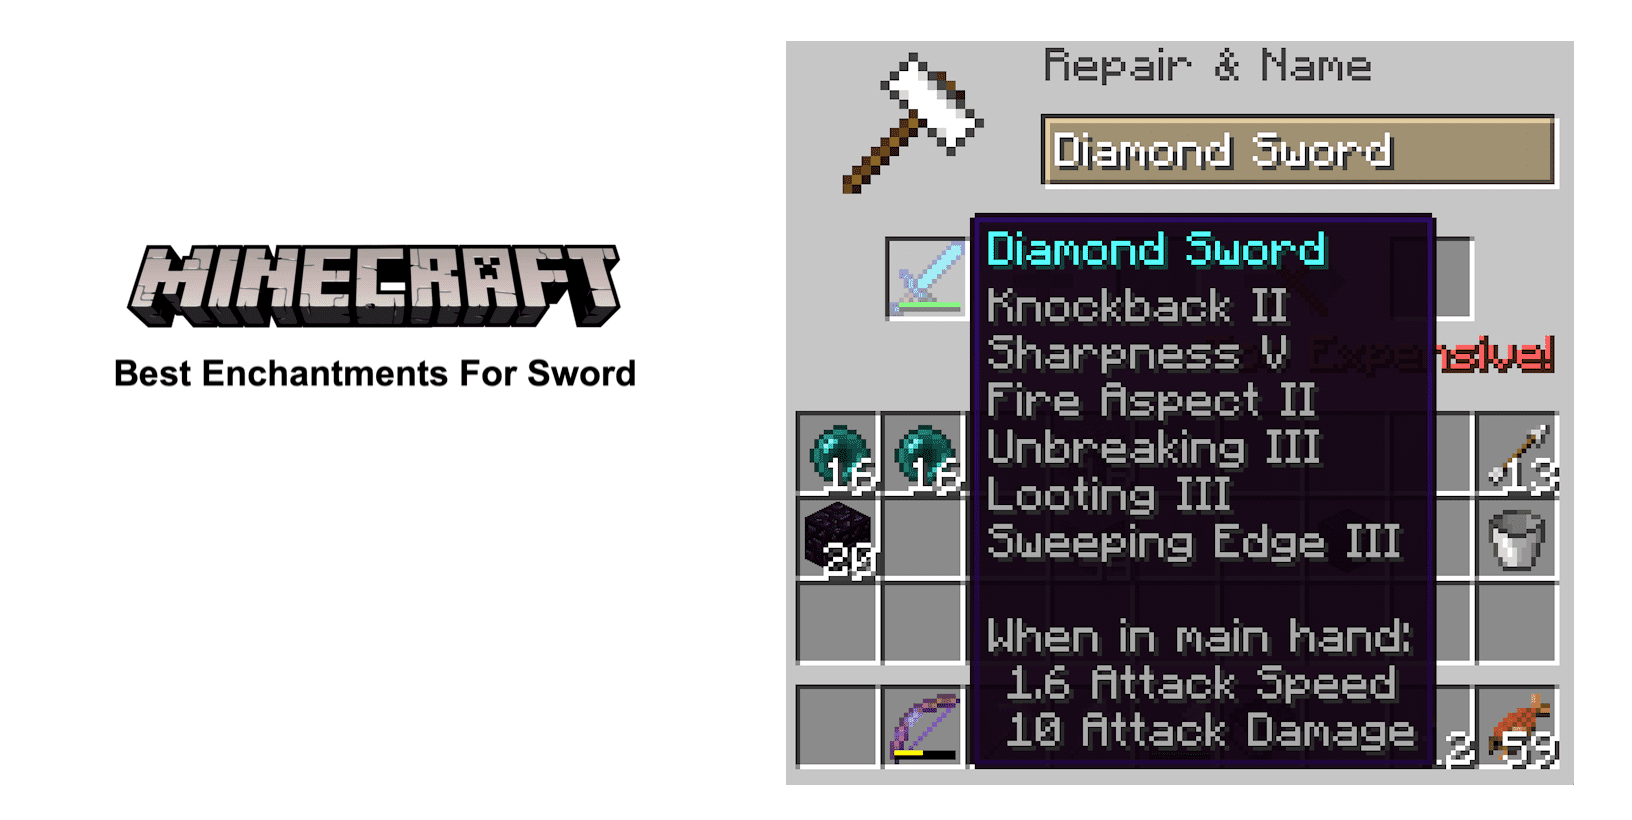 Encantamientos espada minecraft